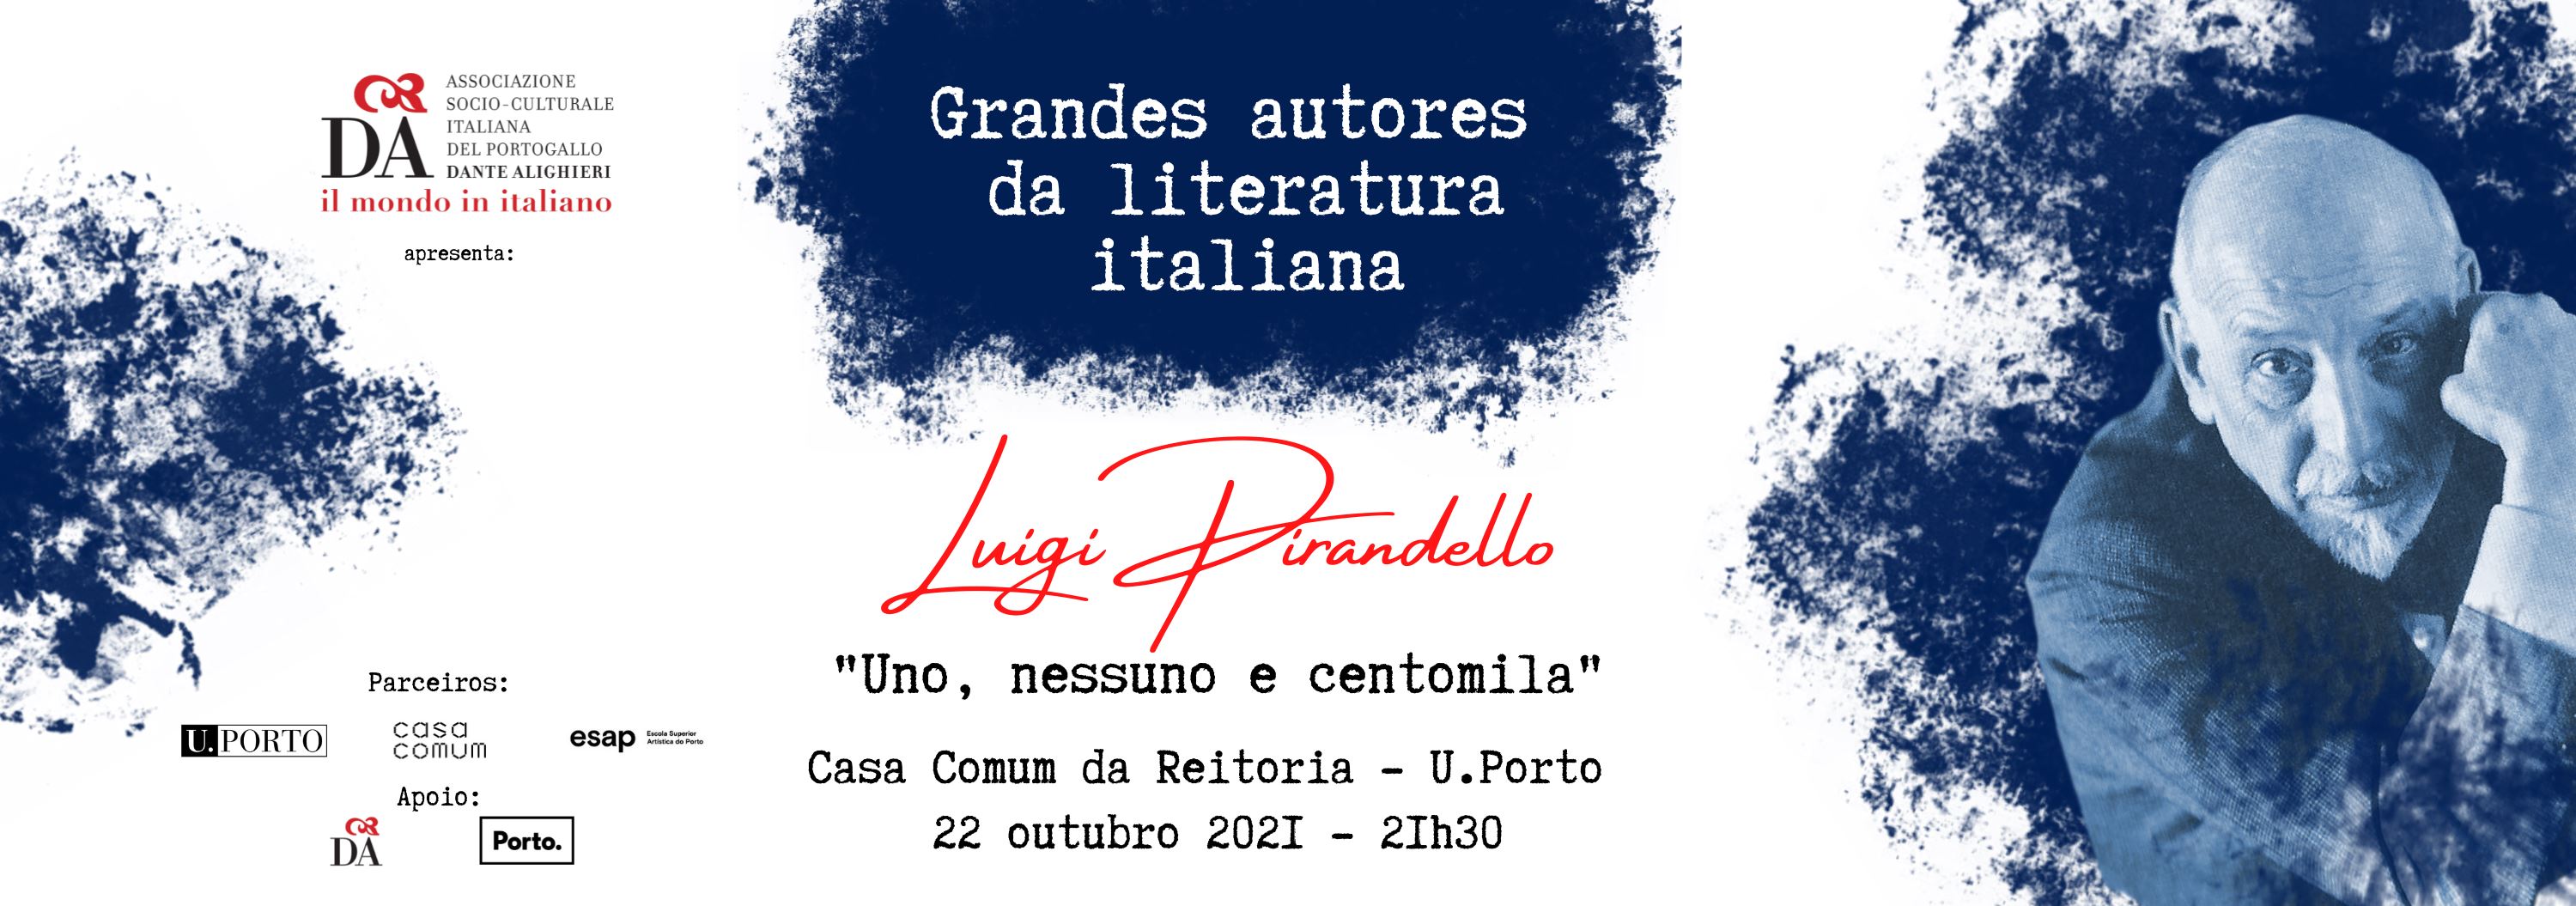 Grandes Autores da Literatura Italiana: Uno, nessuno e centomila de Luigi Pirandello